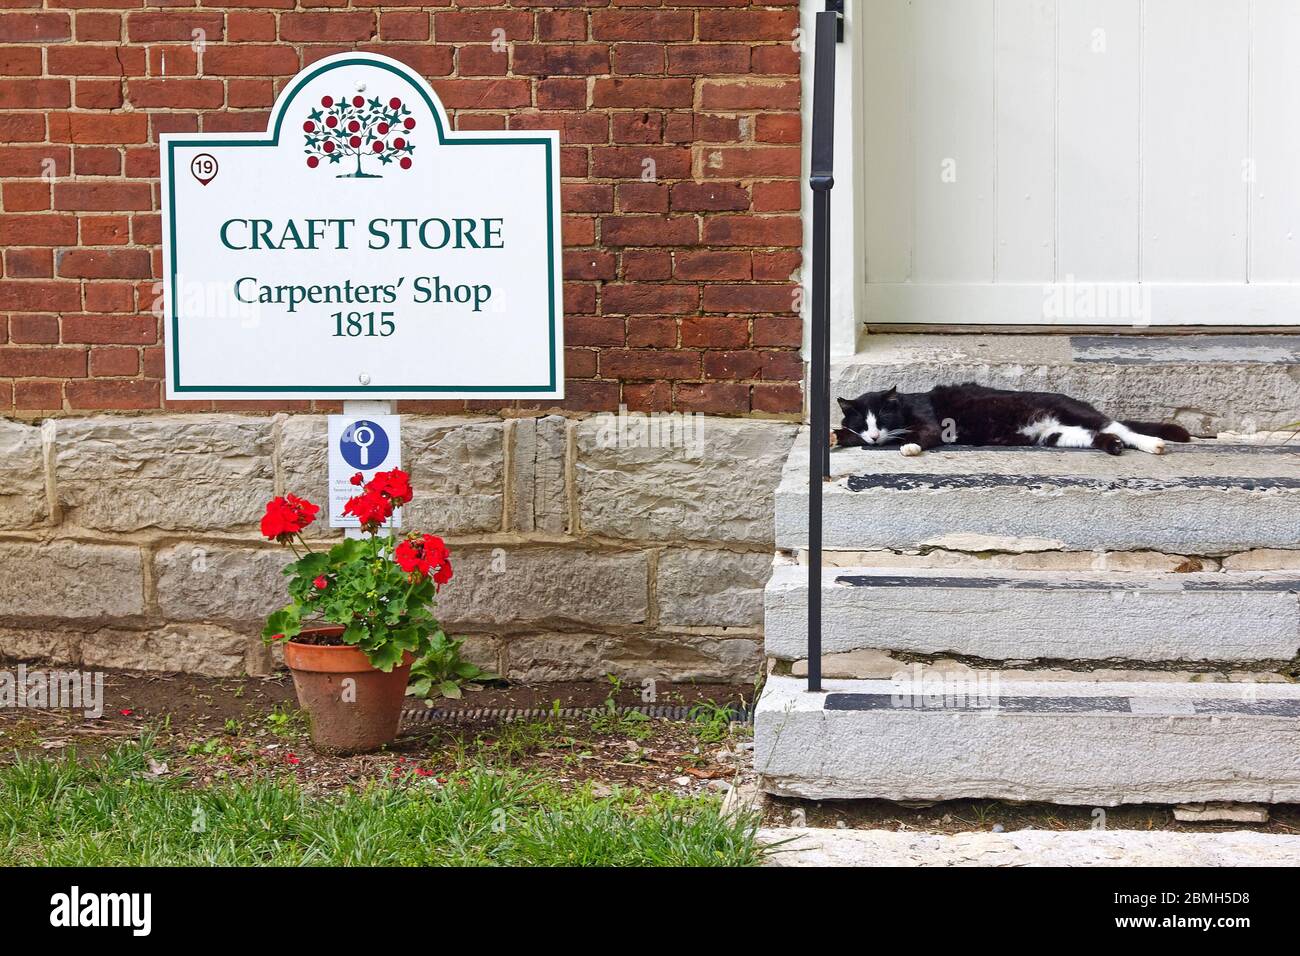 Boutique d'artisanat, bâtiment de la boutique de charpentiers; 1815, chat noir sur marche, géranium rouge en pot, brique, pierre, vieux; Shaker Village of Pleasant Hill; defunct elli Banque D'Images